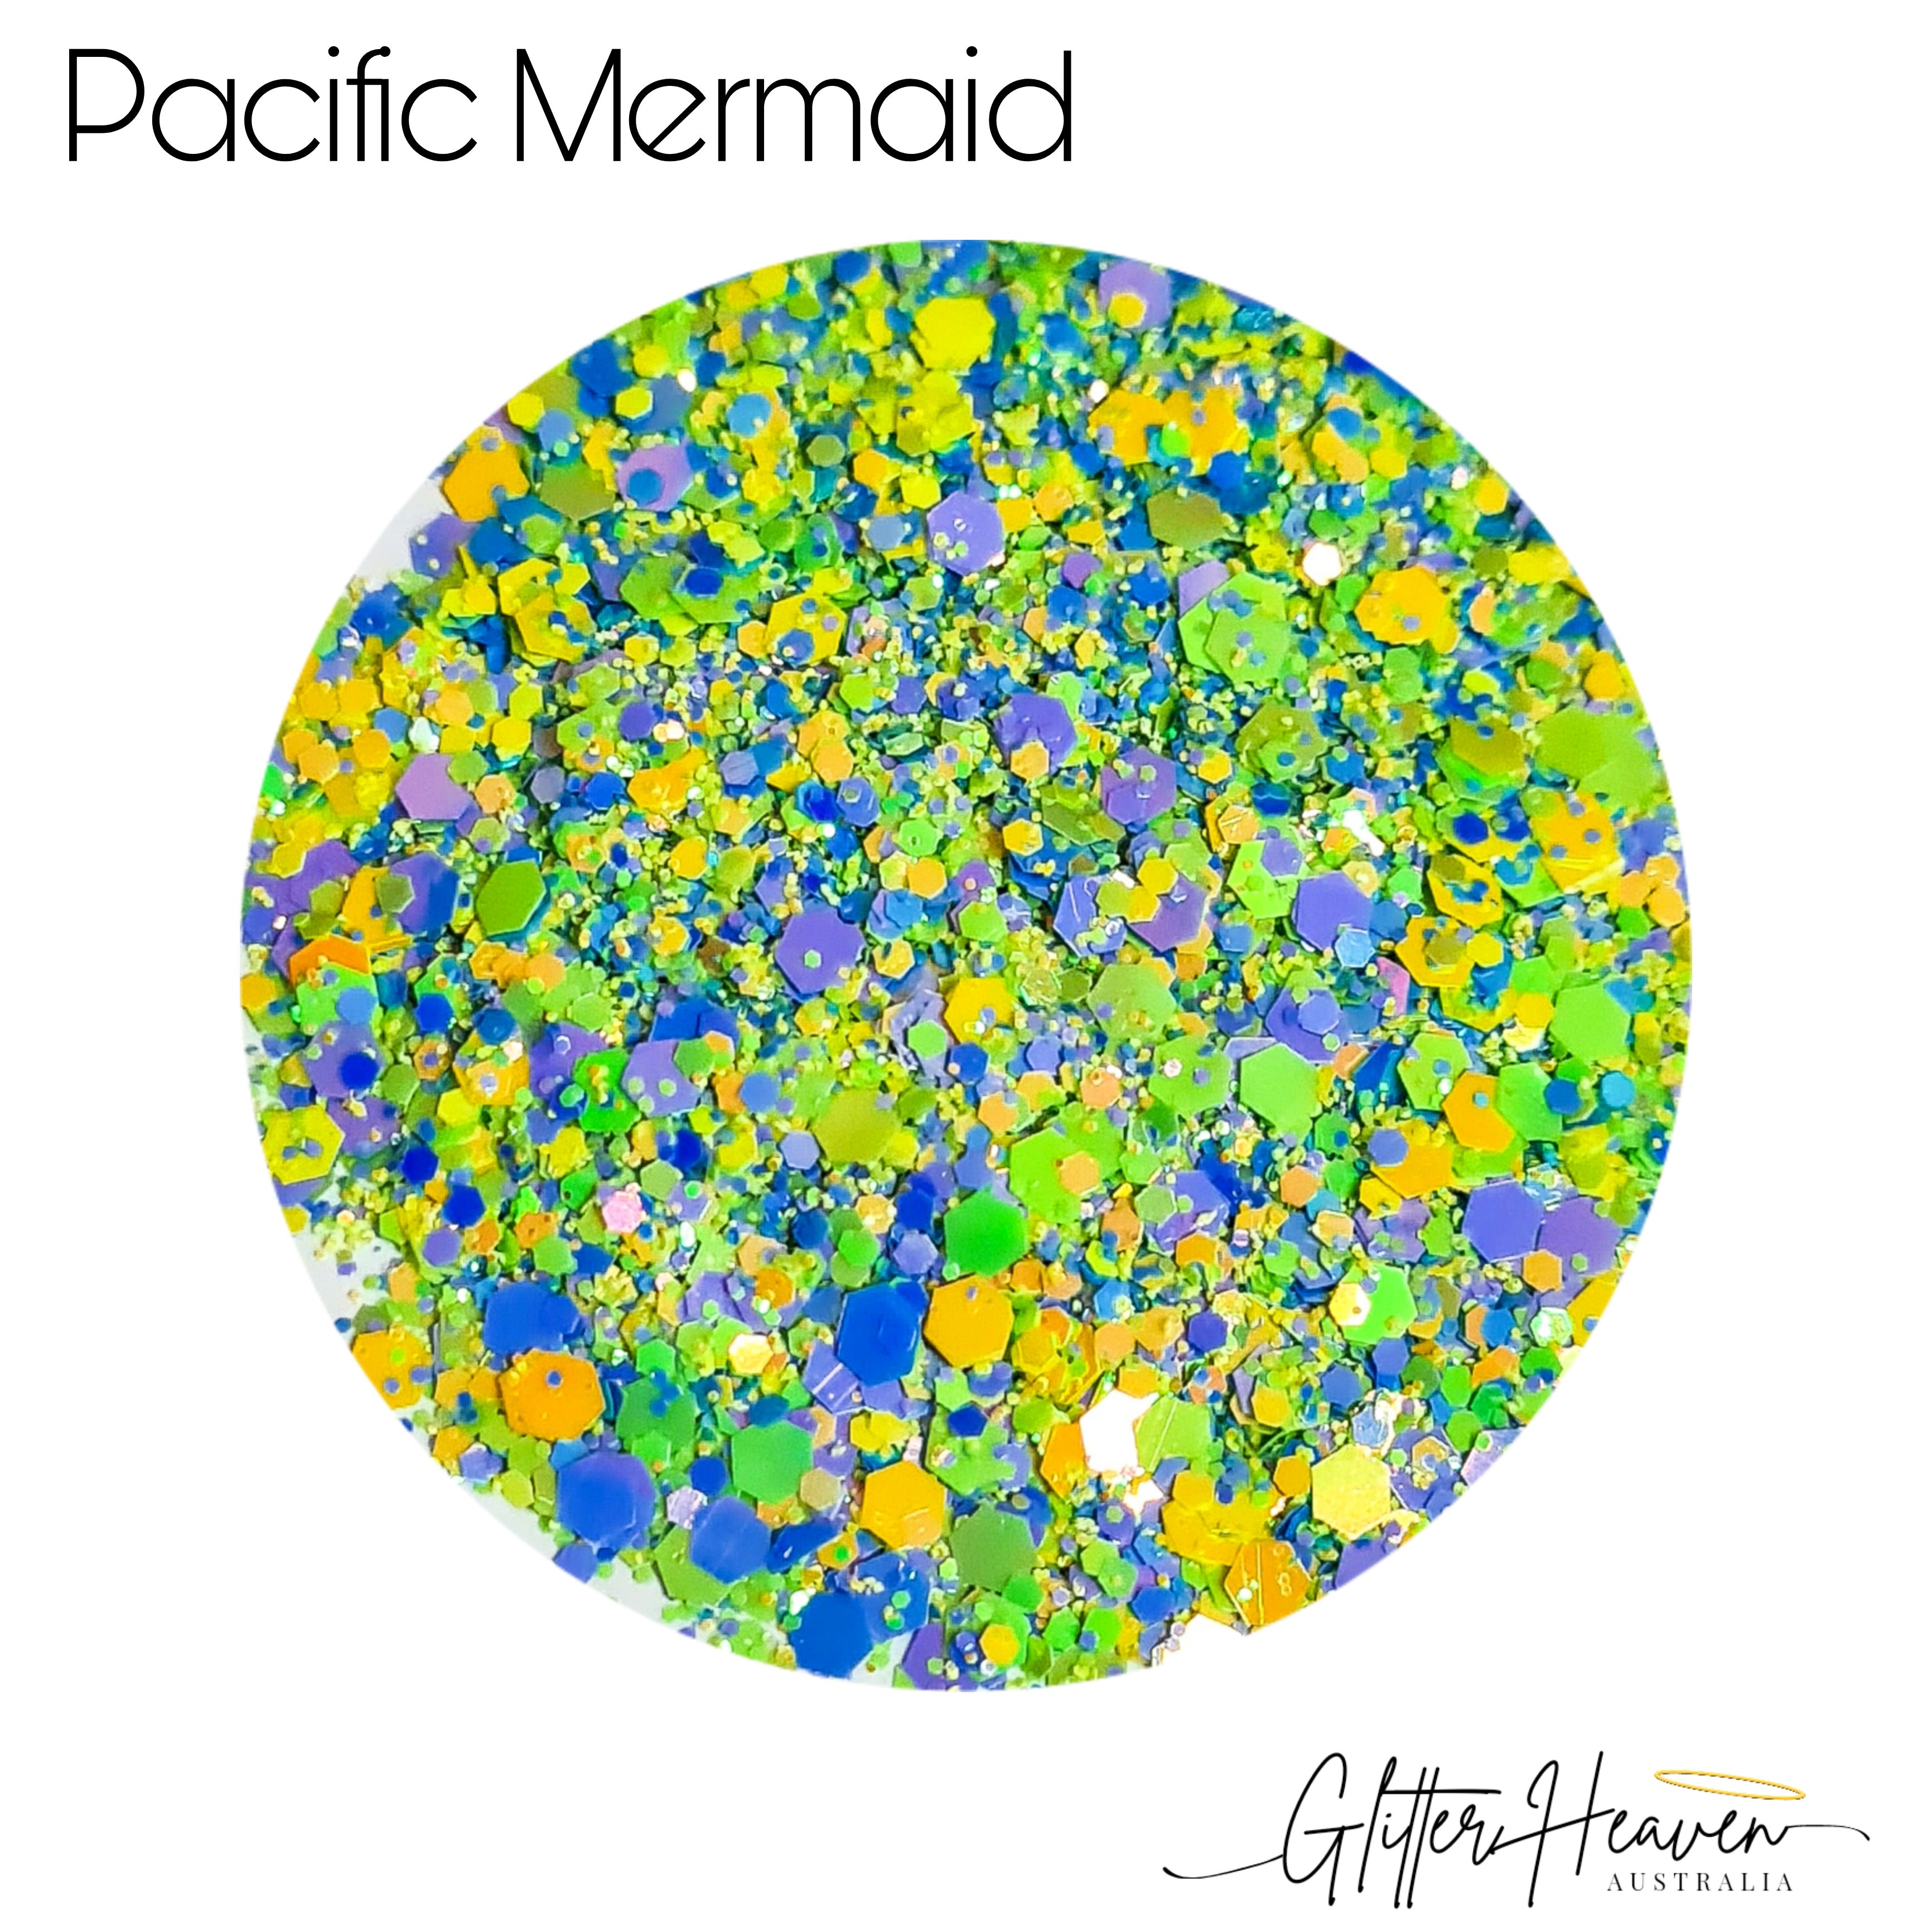 Pacific Mermaid